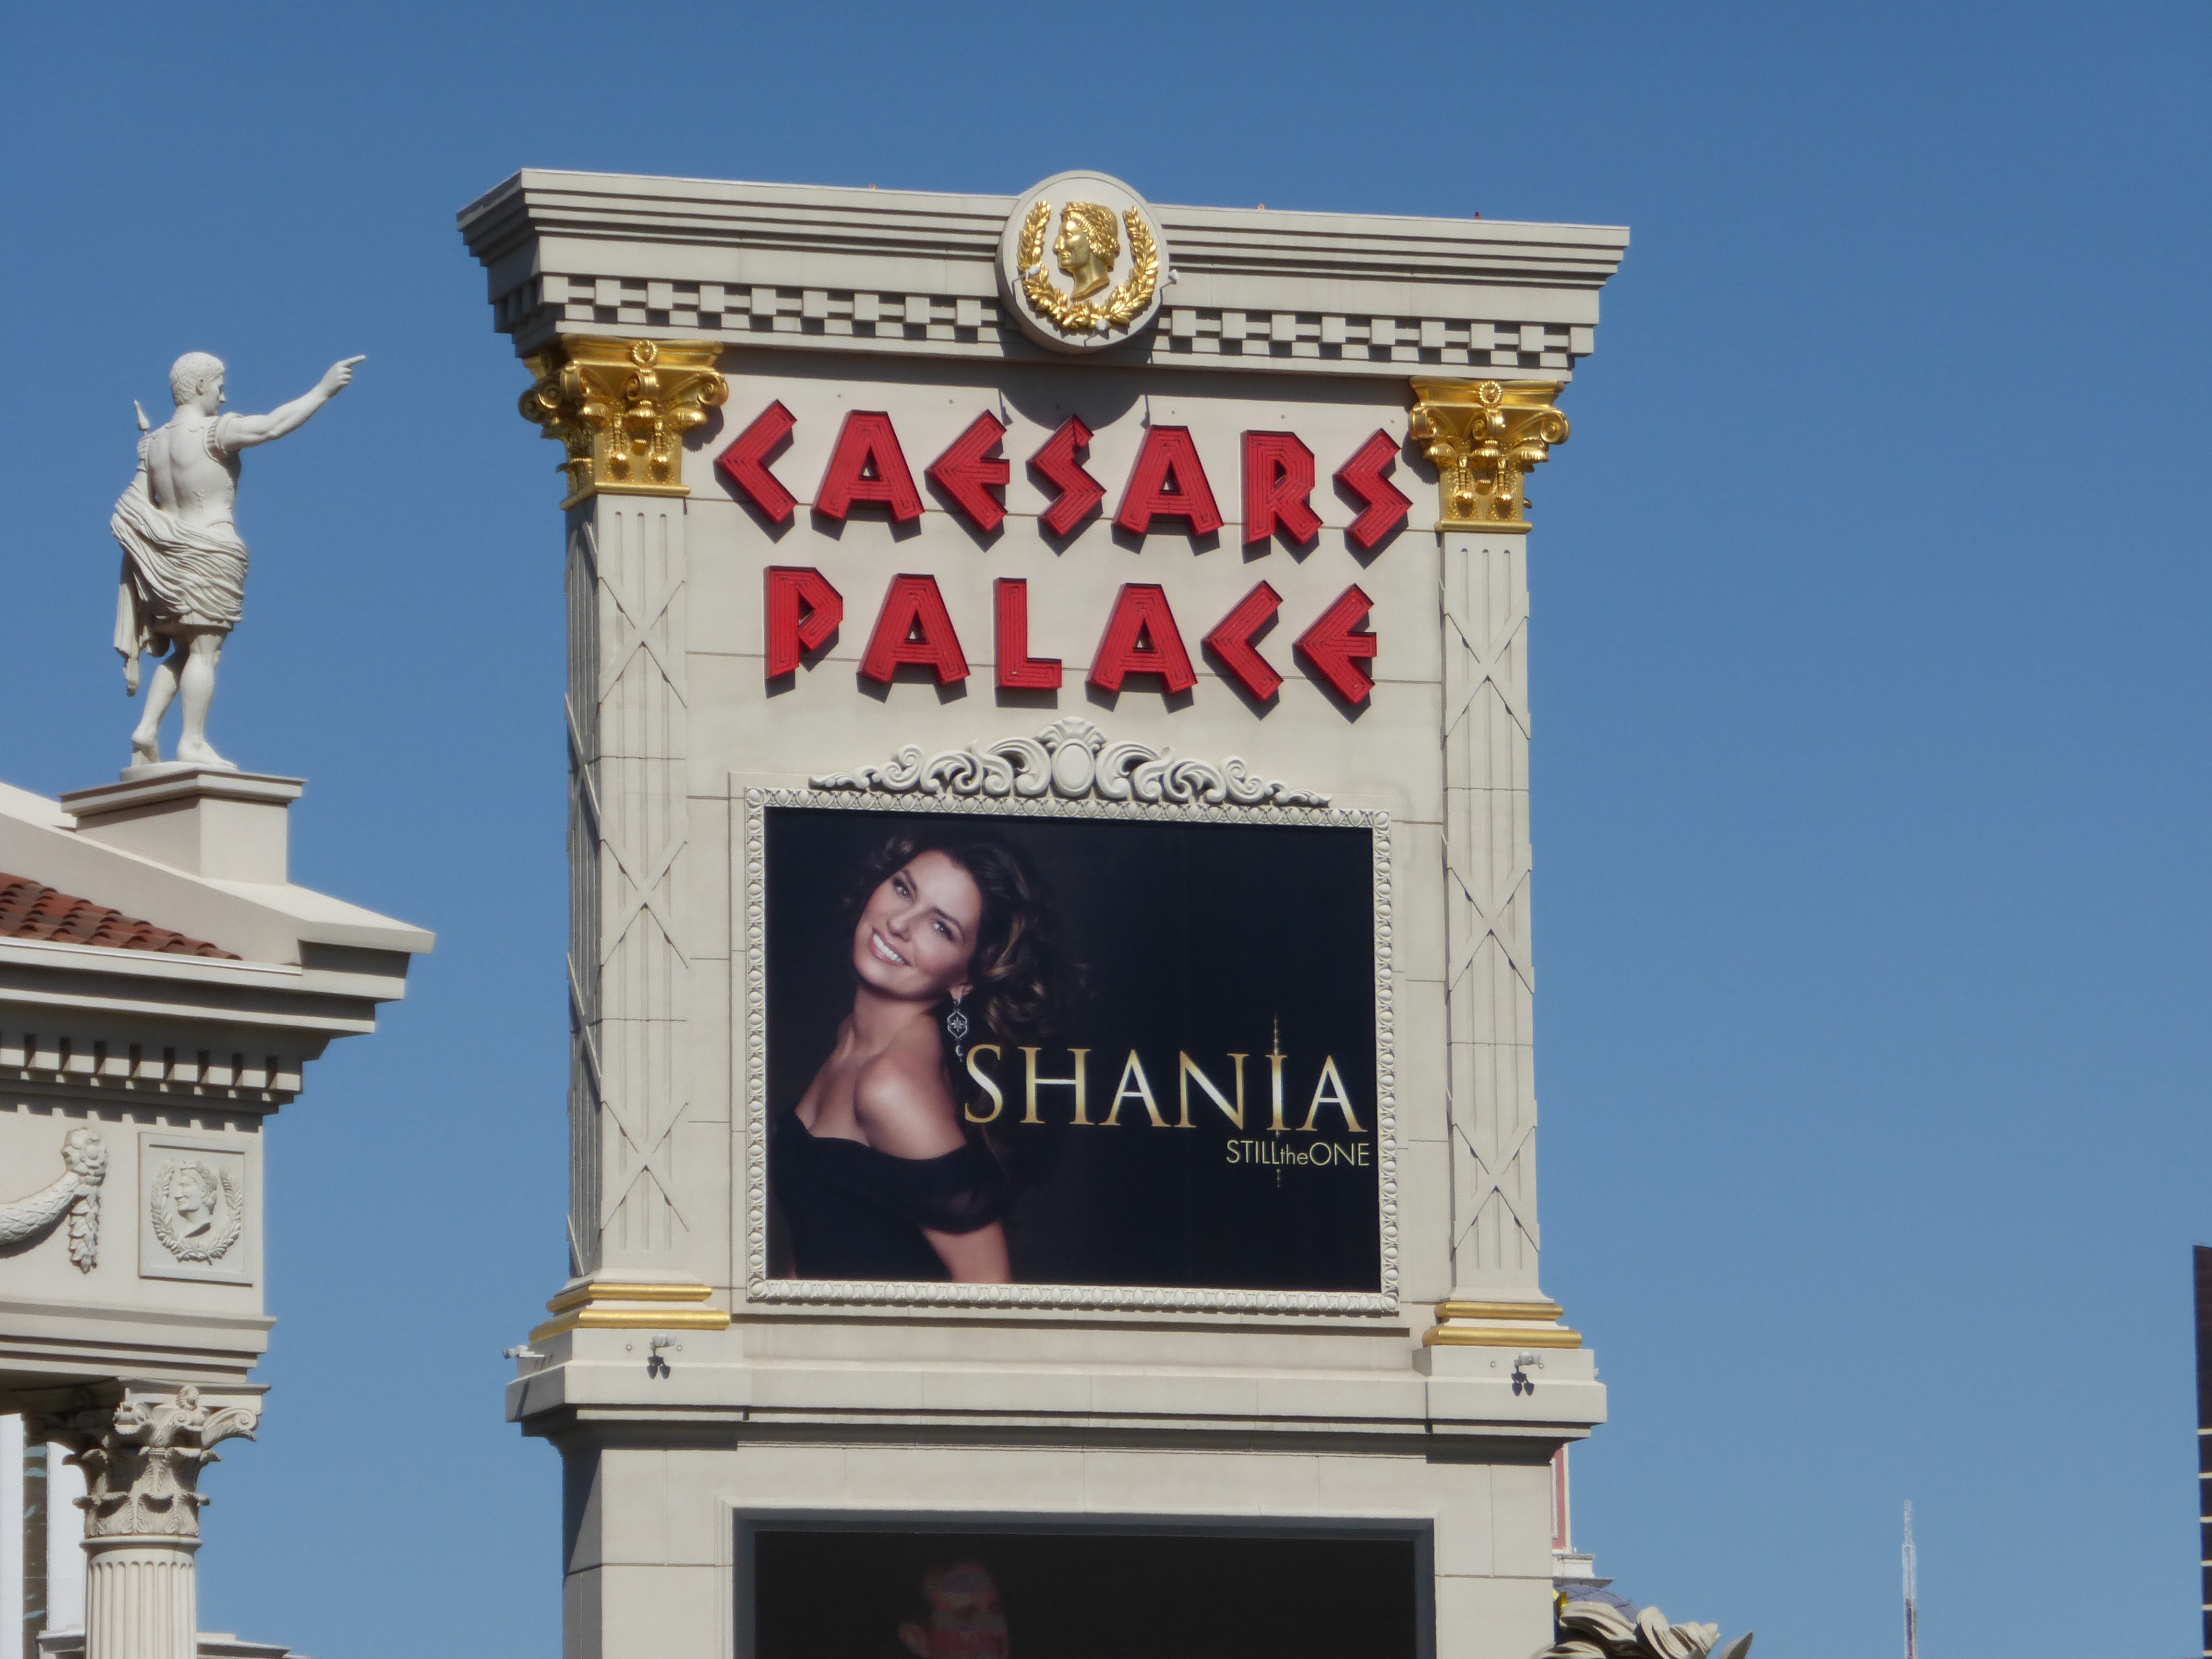 Las Vegas, Caesars Palace, USA, 2014